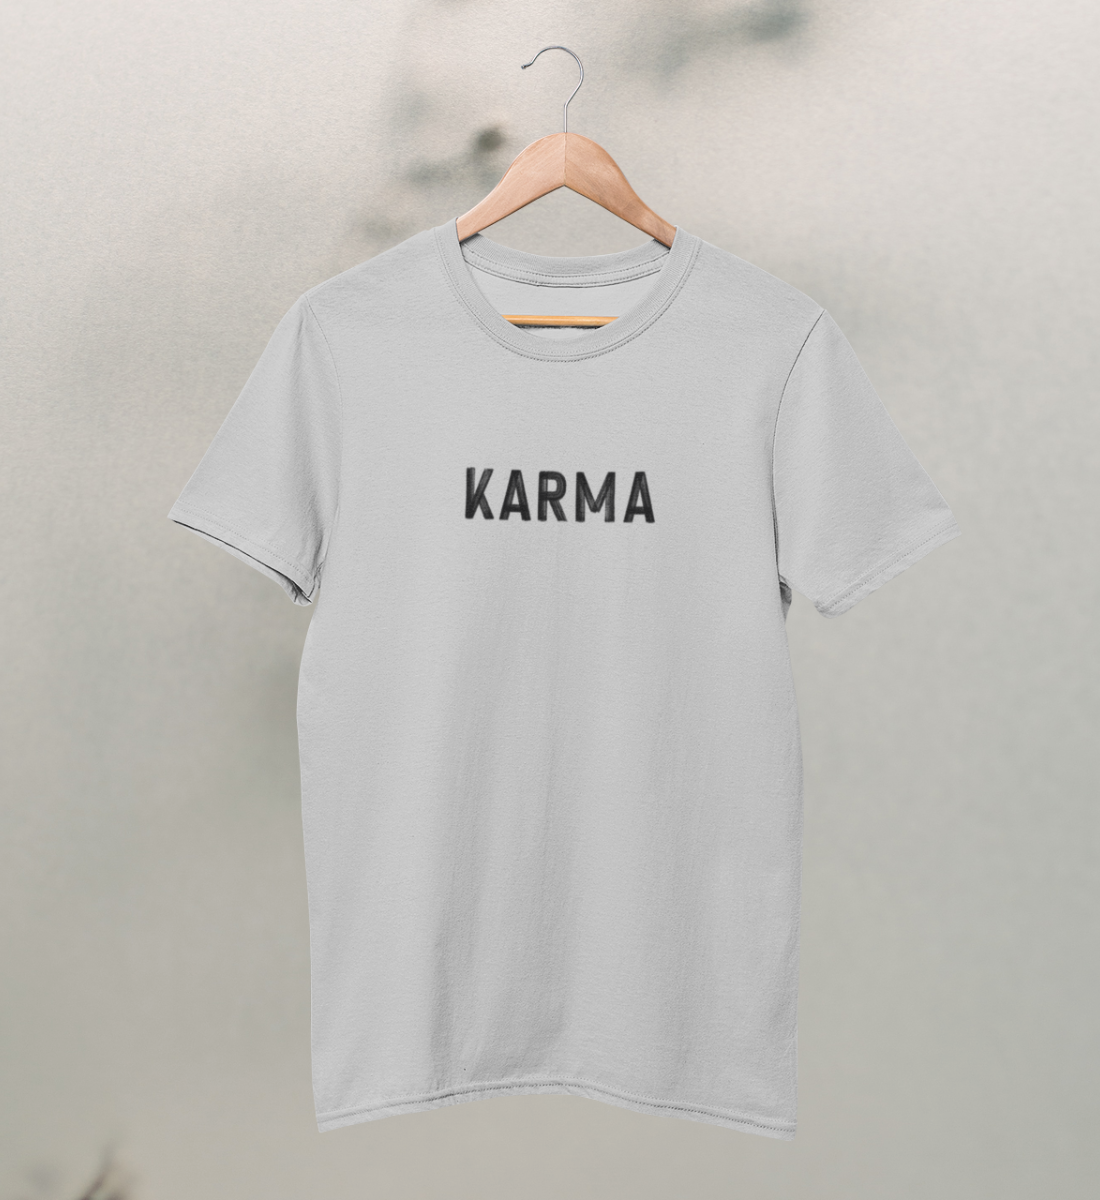 karma l t-shirt kinder bio-baumwolle hellgrau l yoga mode kinder l bio yoga kleidung l ökologische mode l ethischer konsum dank natürlichen materialien